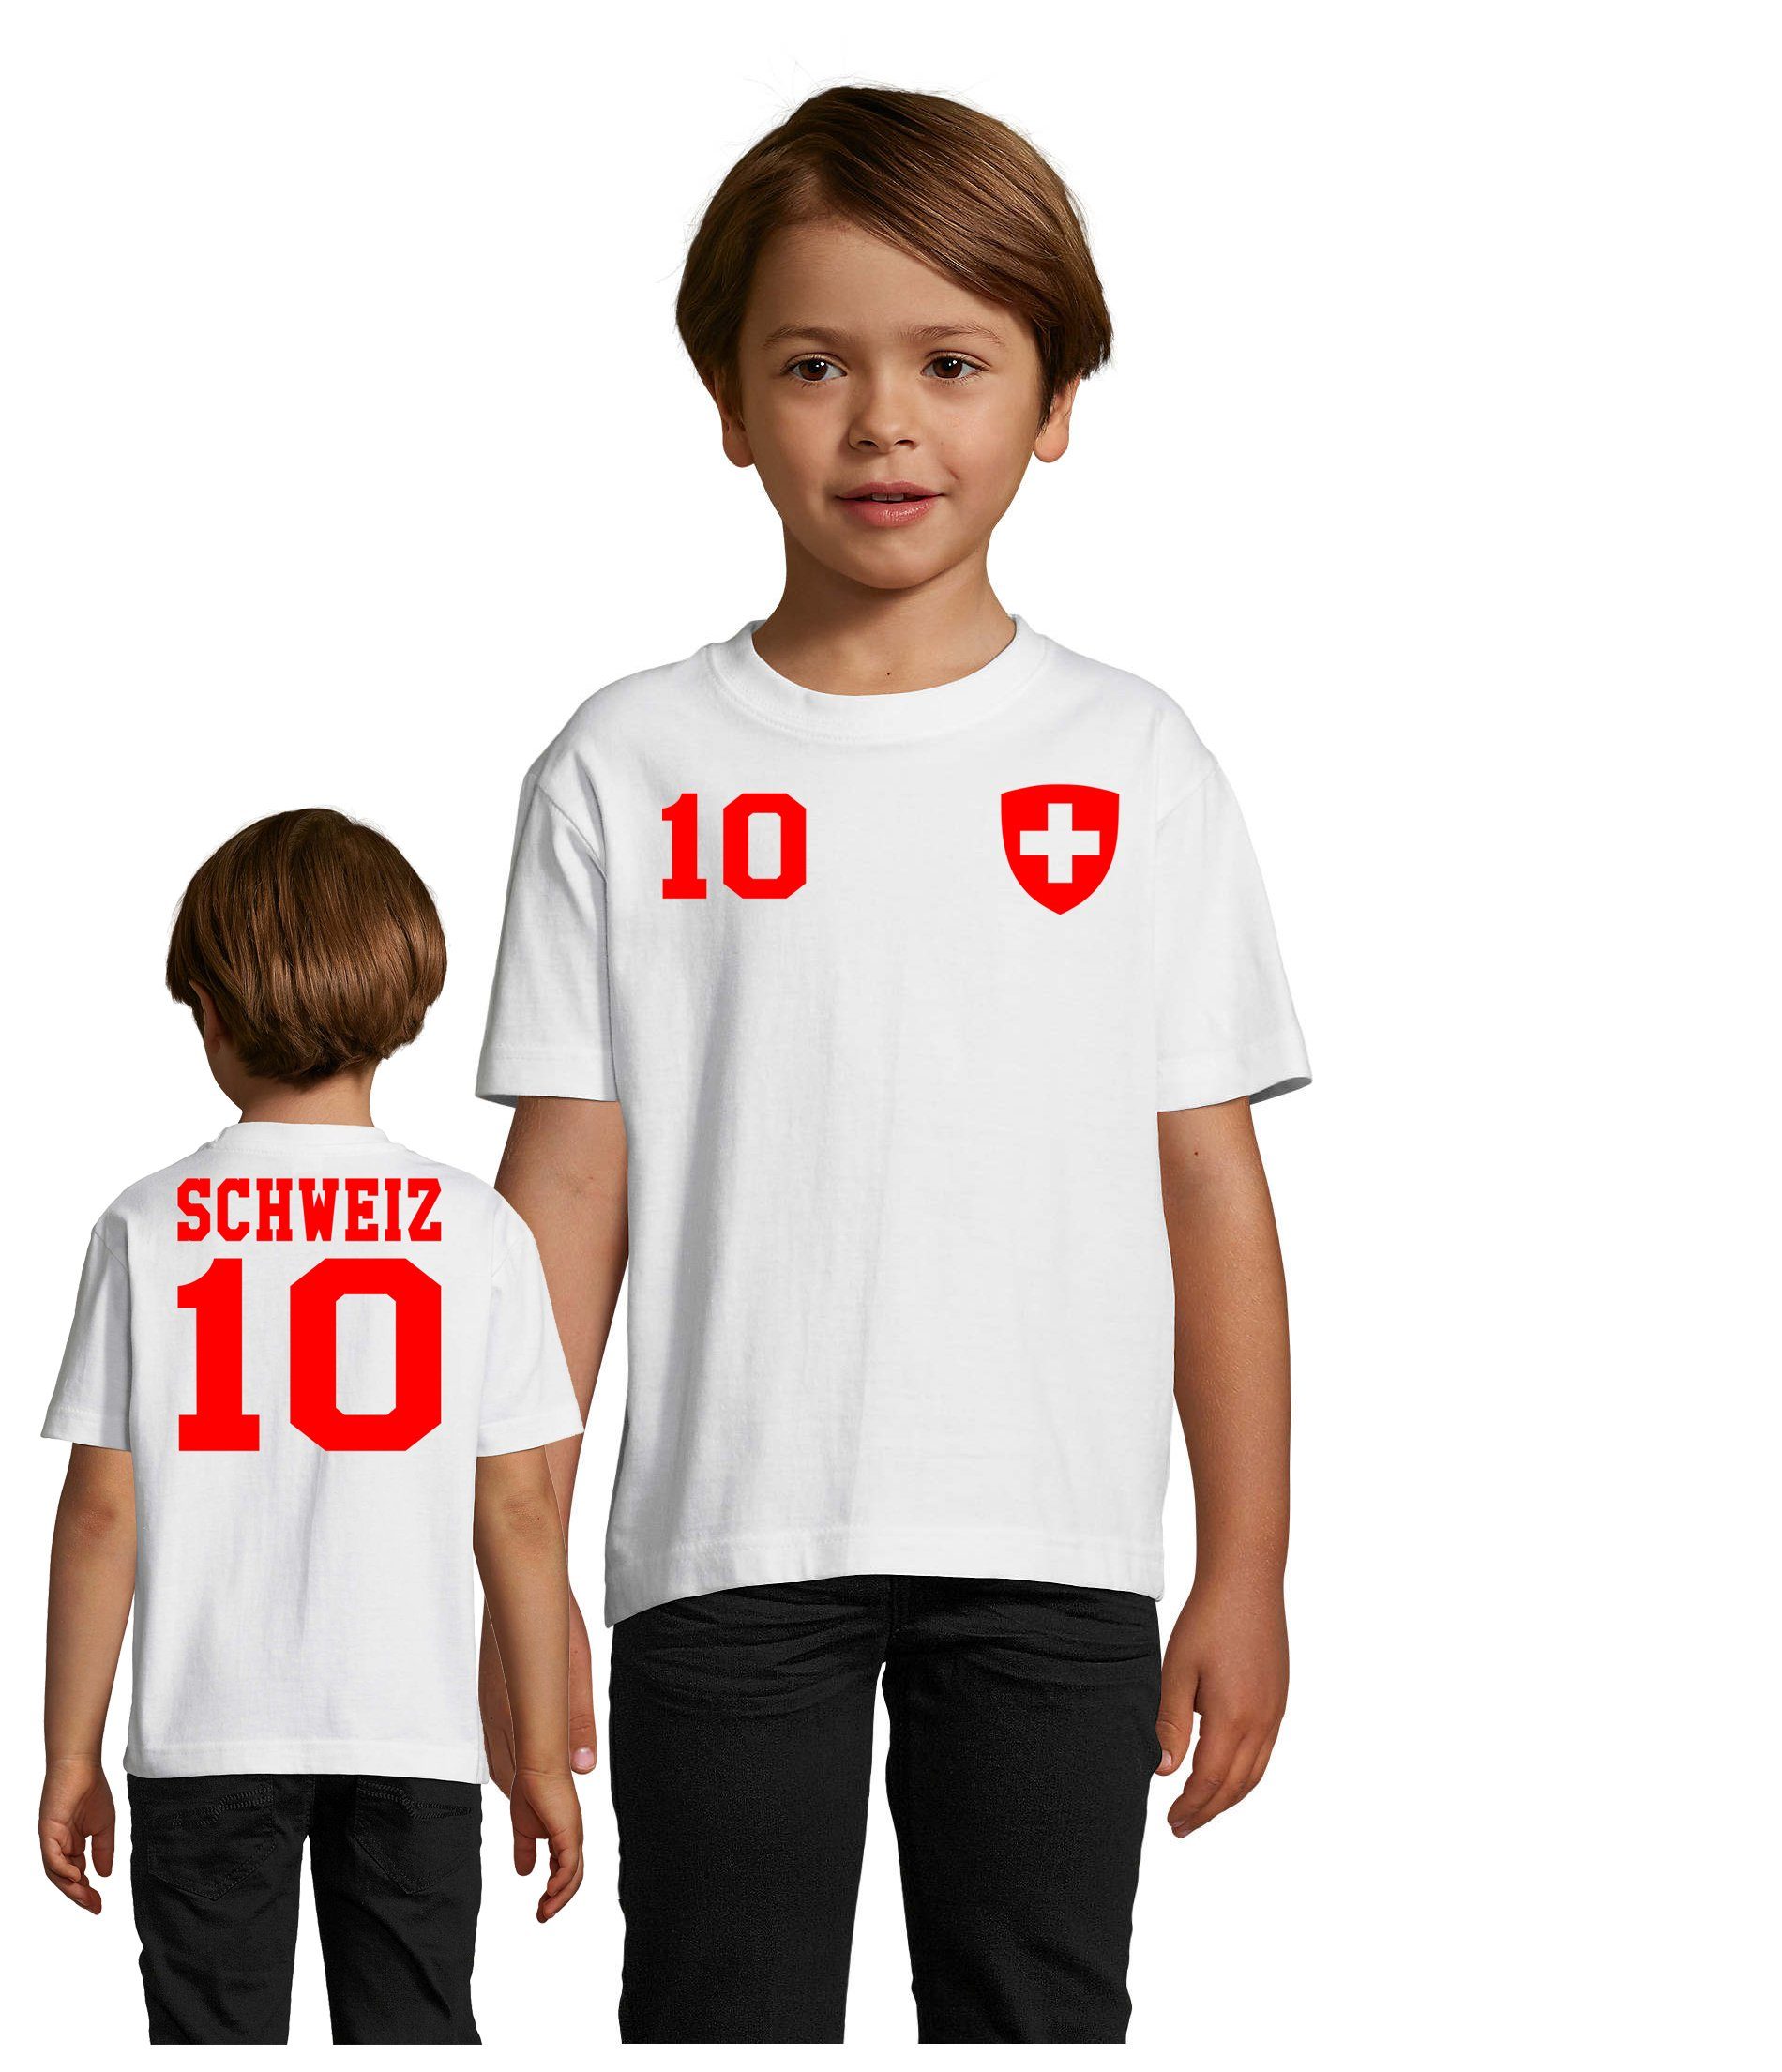 Blondie & Brownie T-Shirt Kinder Schweiz Swiss Sport Trikot Fußball Meister WM Europa EM